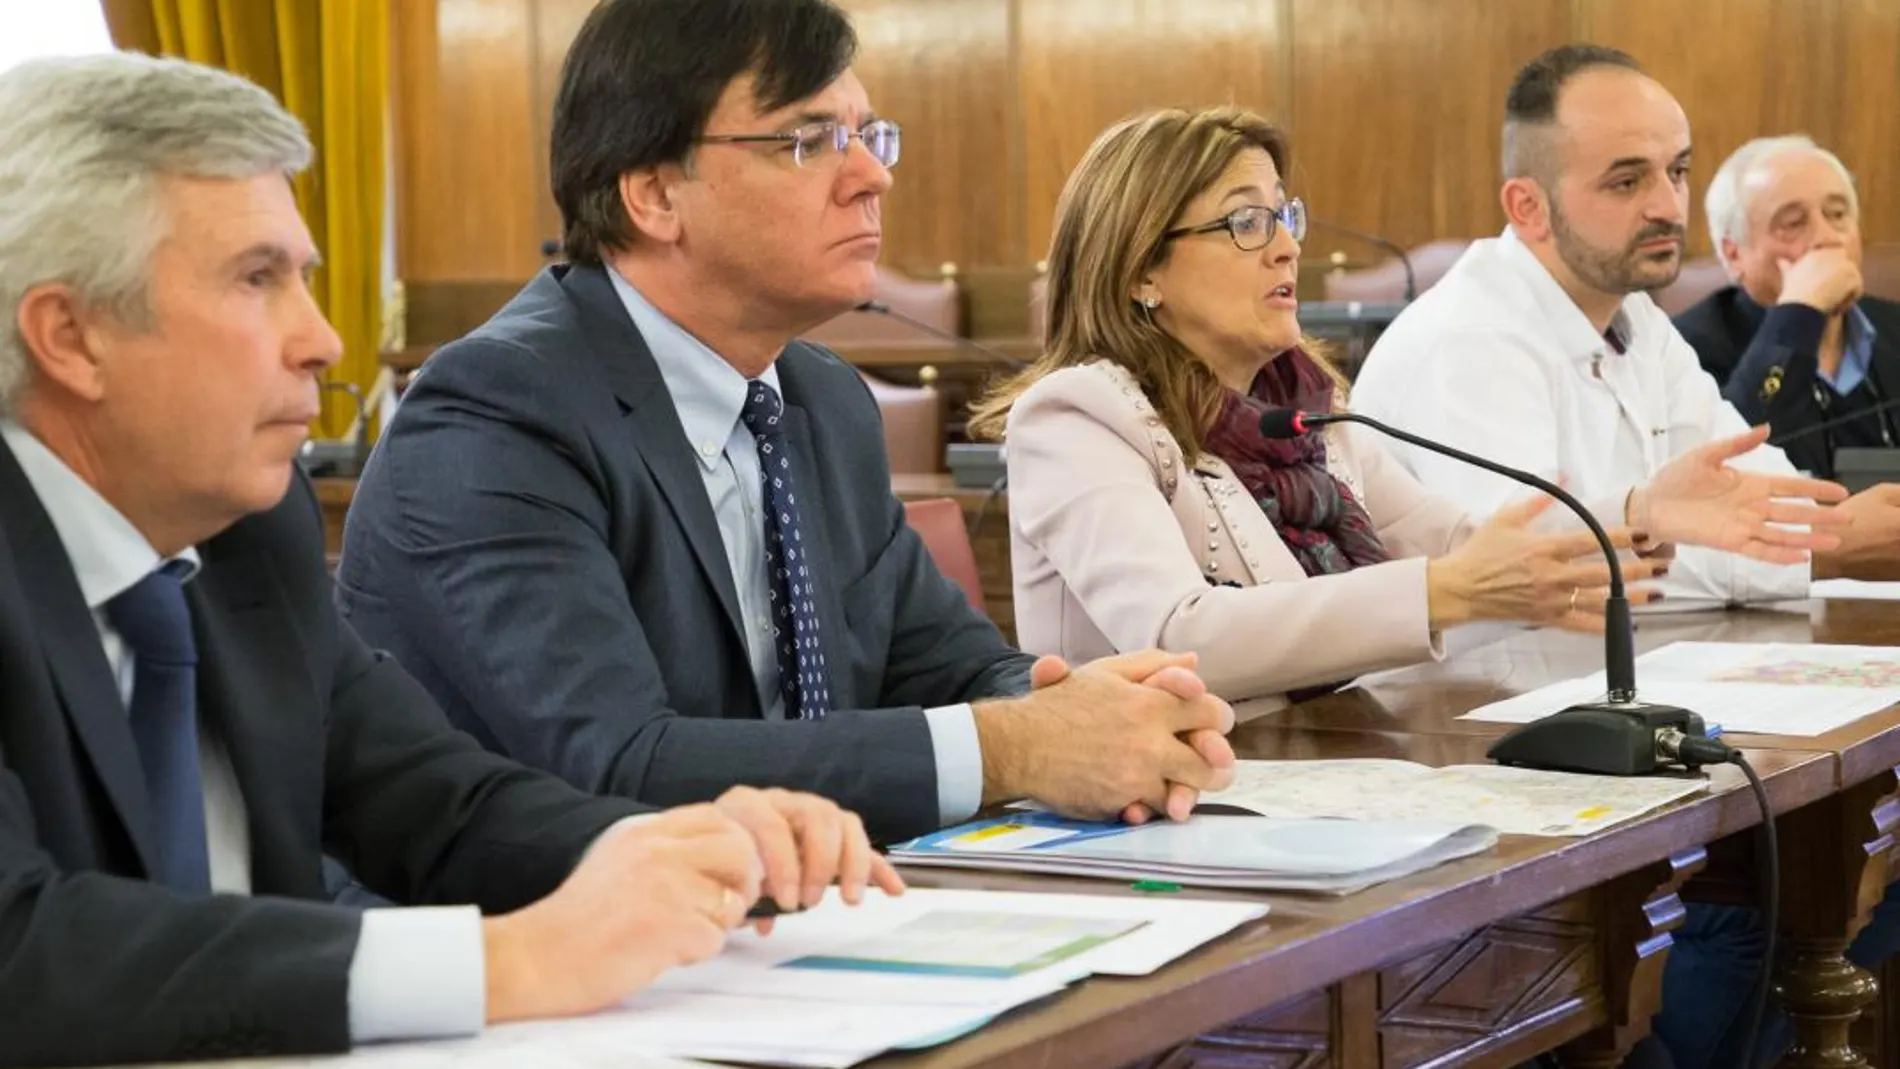 La presidenta de la Diputación de Zamora, Mayte Martín, y el presidente de la CHD, Juan Ignacio Diego, presentan el proyecto a los alcaldes de las comarcas de Campos y Pan